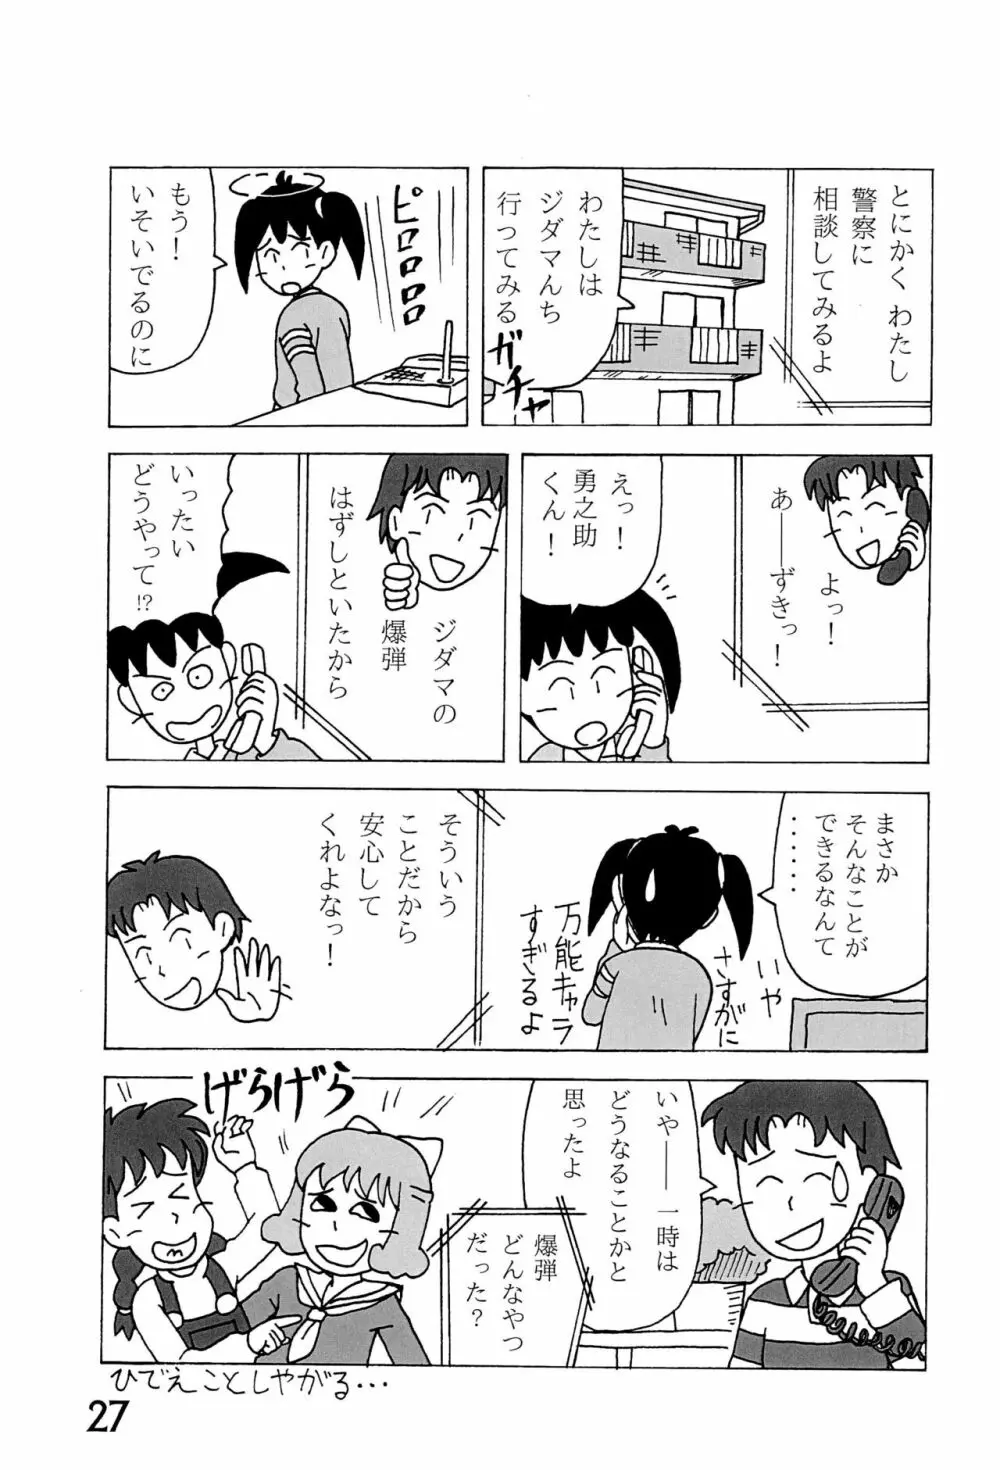 みなみ小学校学級新聞2018+号外版 27ページ